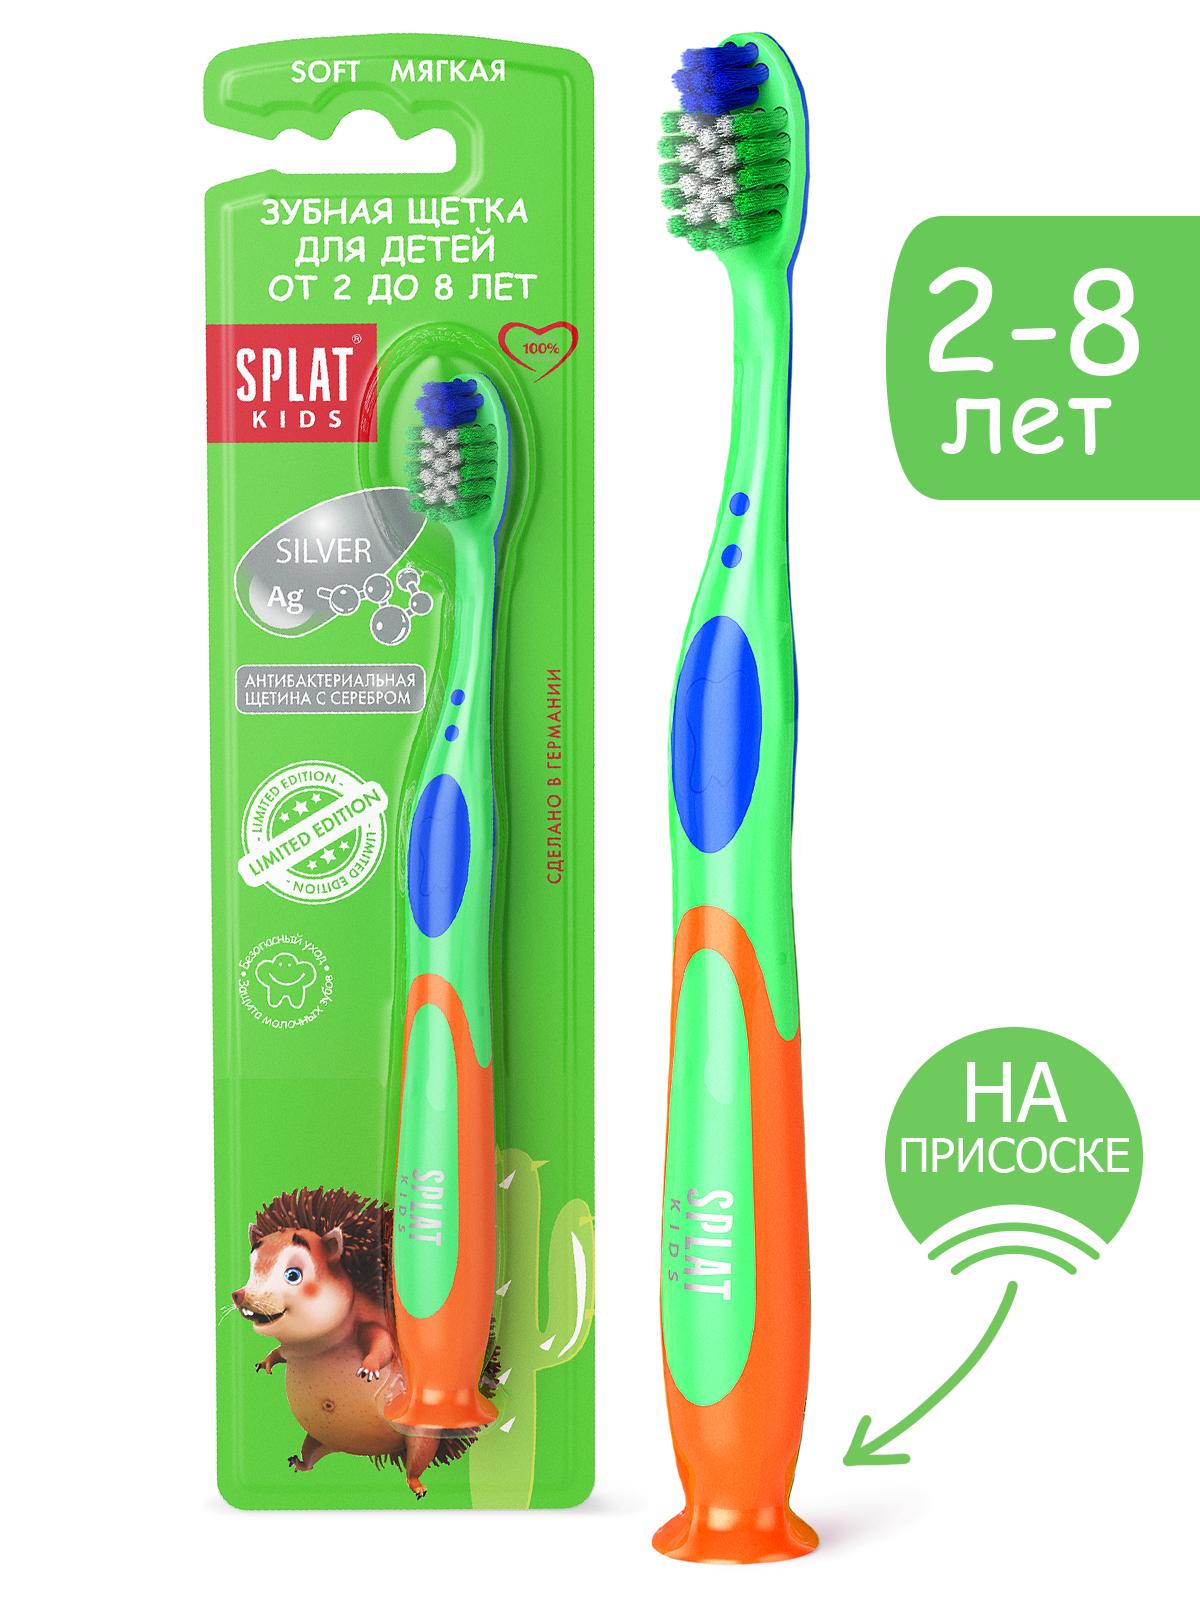 Дитяча зубна щітка Splat Kids, м'яка, зелений - фото 2